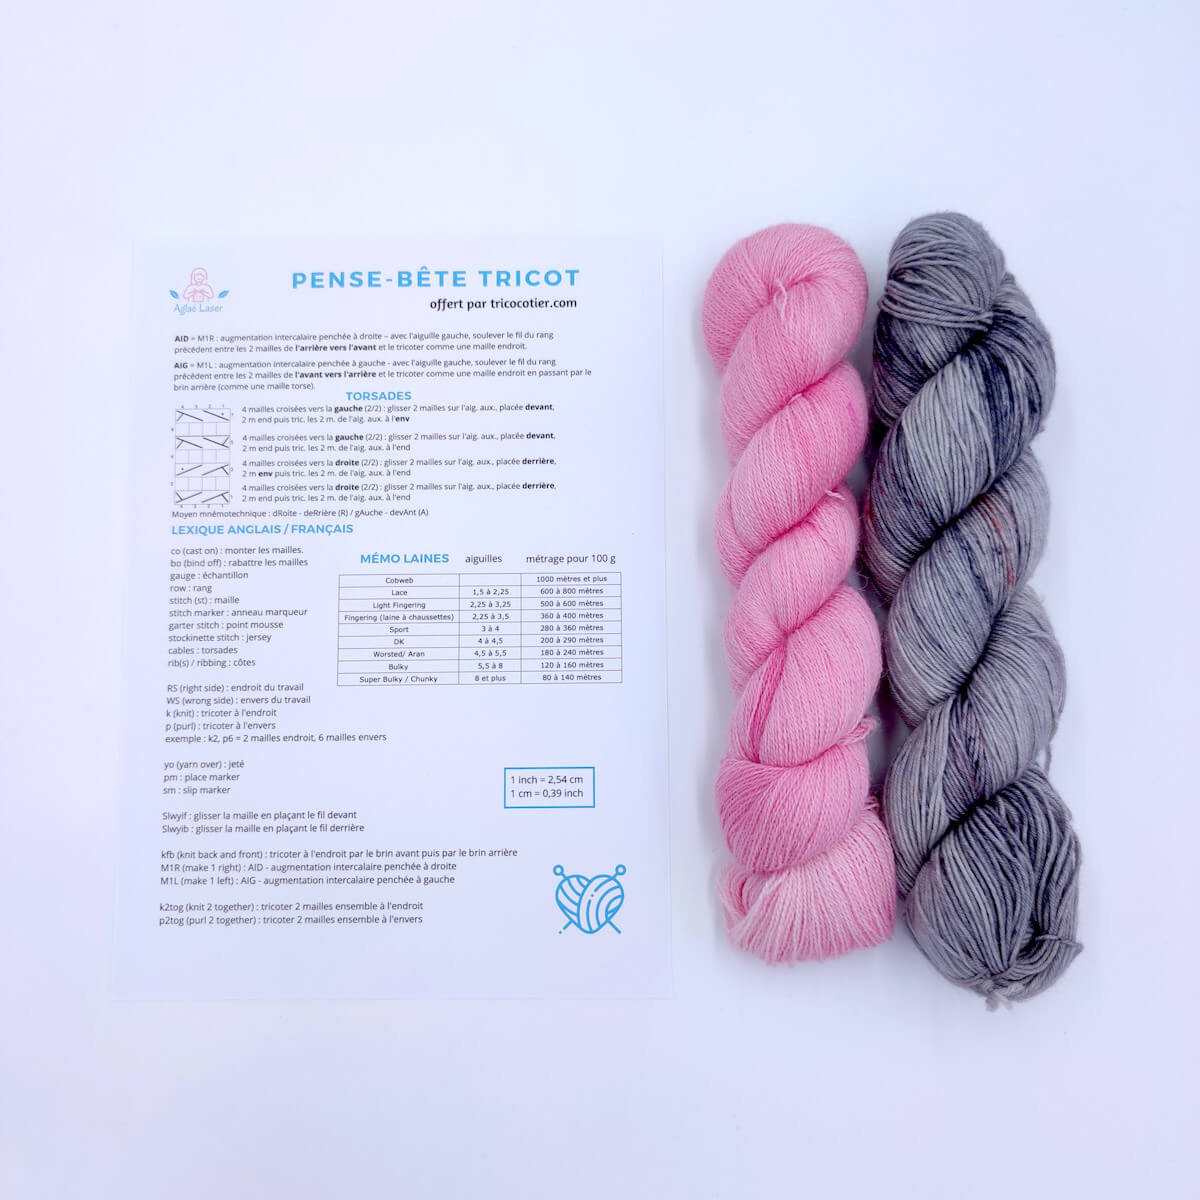 Fiche pratique et mémo pour le tricot : lexique français anglais, guide des torsades, tableau de laine